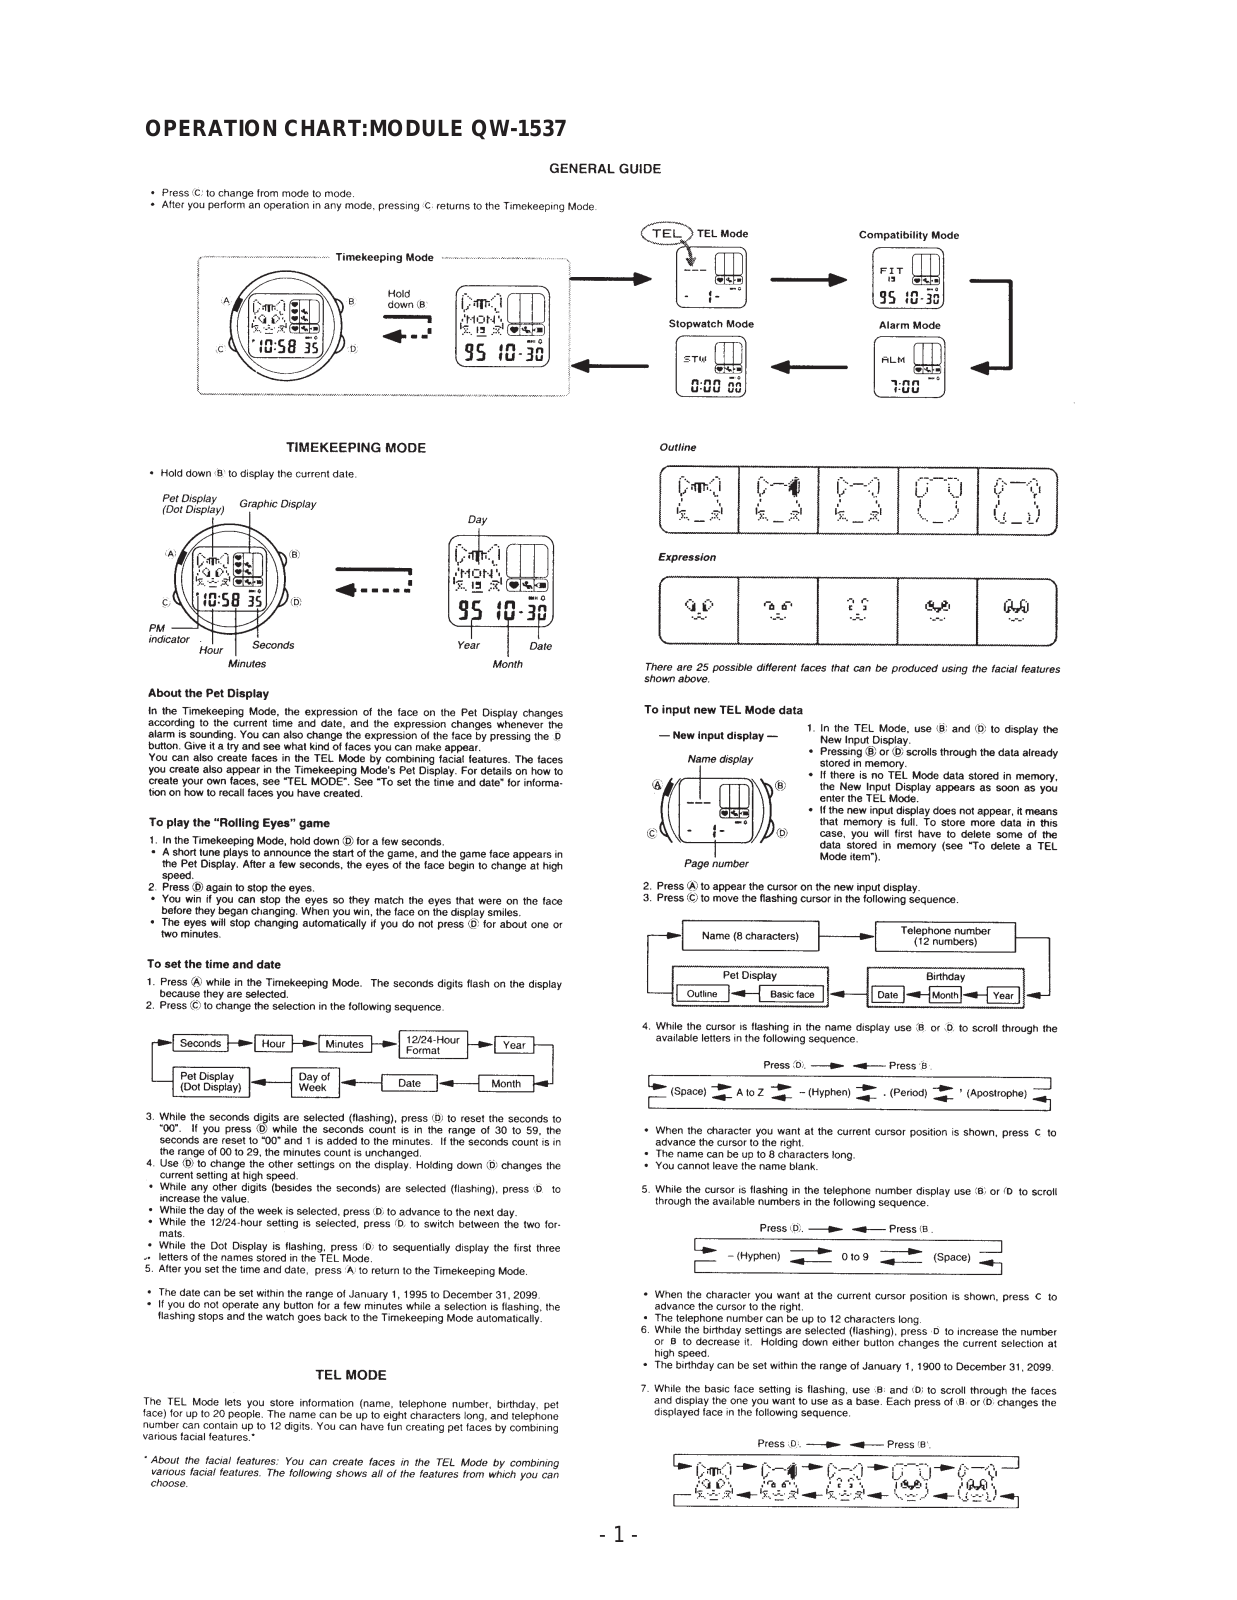 Casio 1537 Owner's Manual